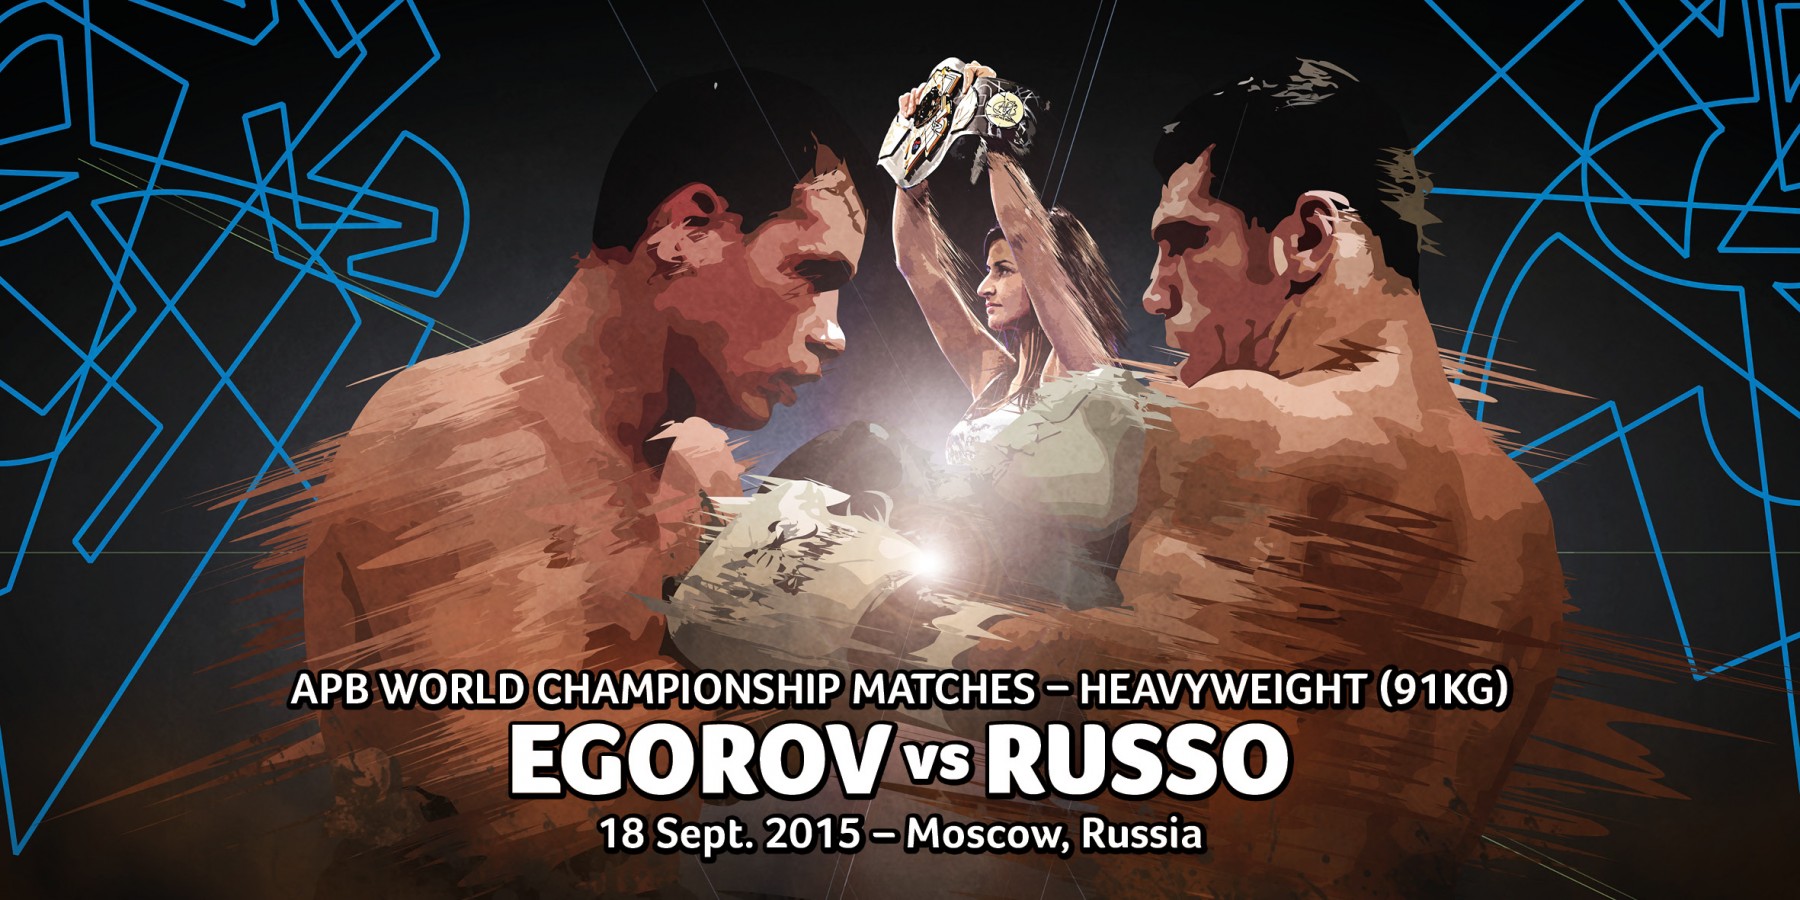 Russo a Mosca per la finalissima del 18 settembre #APBHeavyweight contro Egorov.